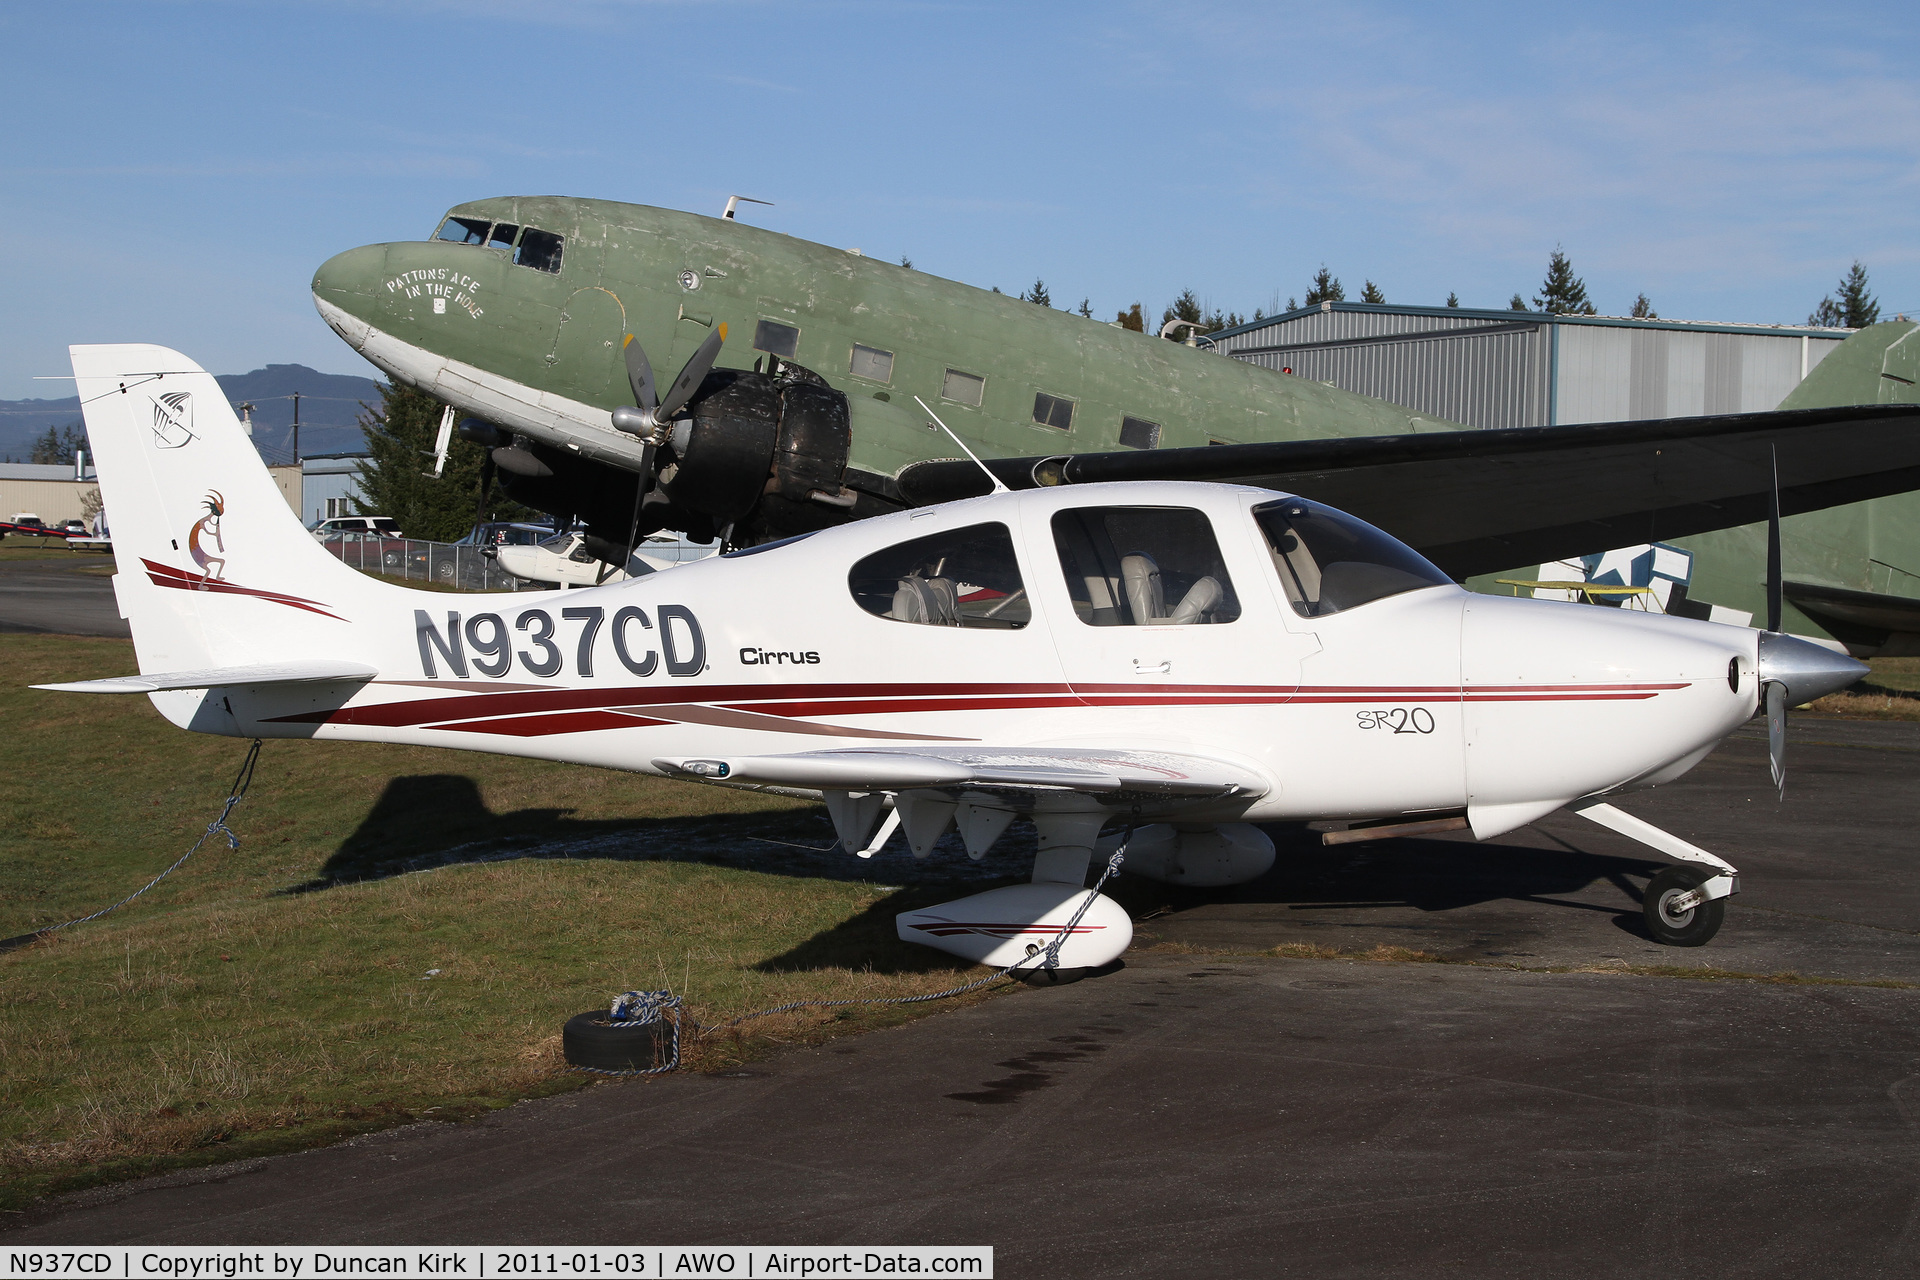 N937CD, 2002 Cirrus SR20 C/N 1249, One has to admit the SR20 is a nice looking plane!